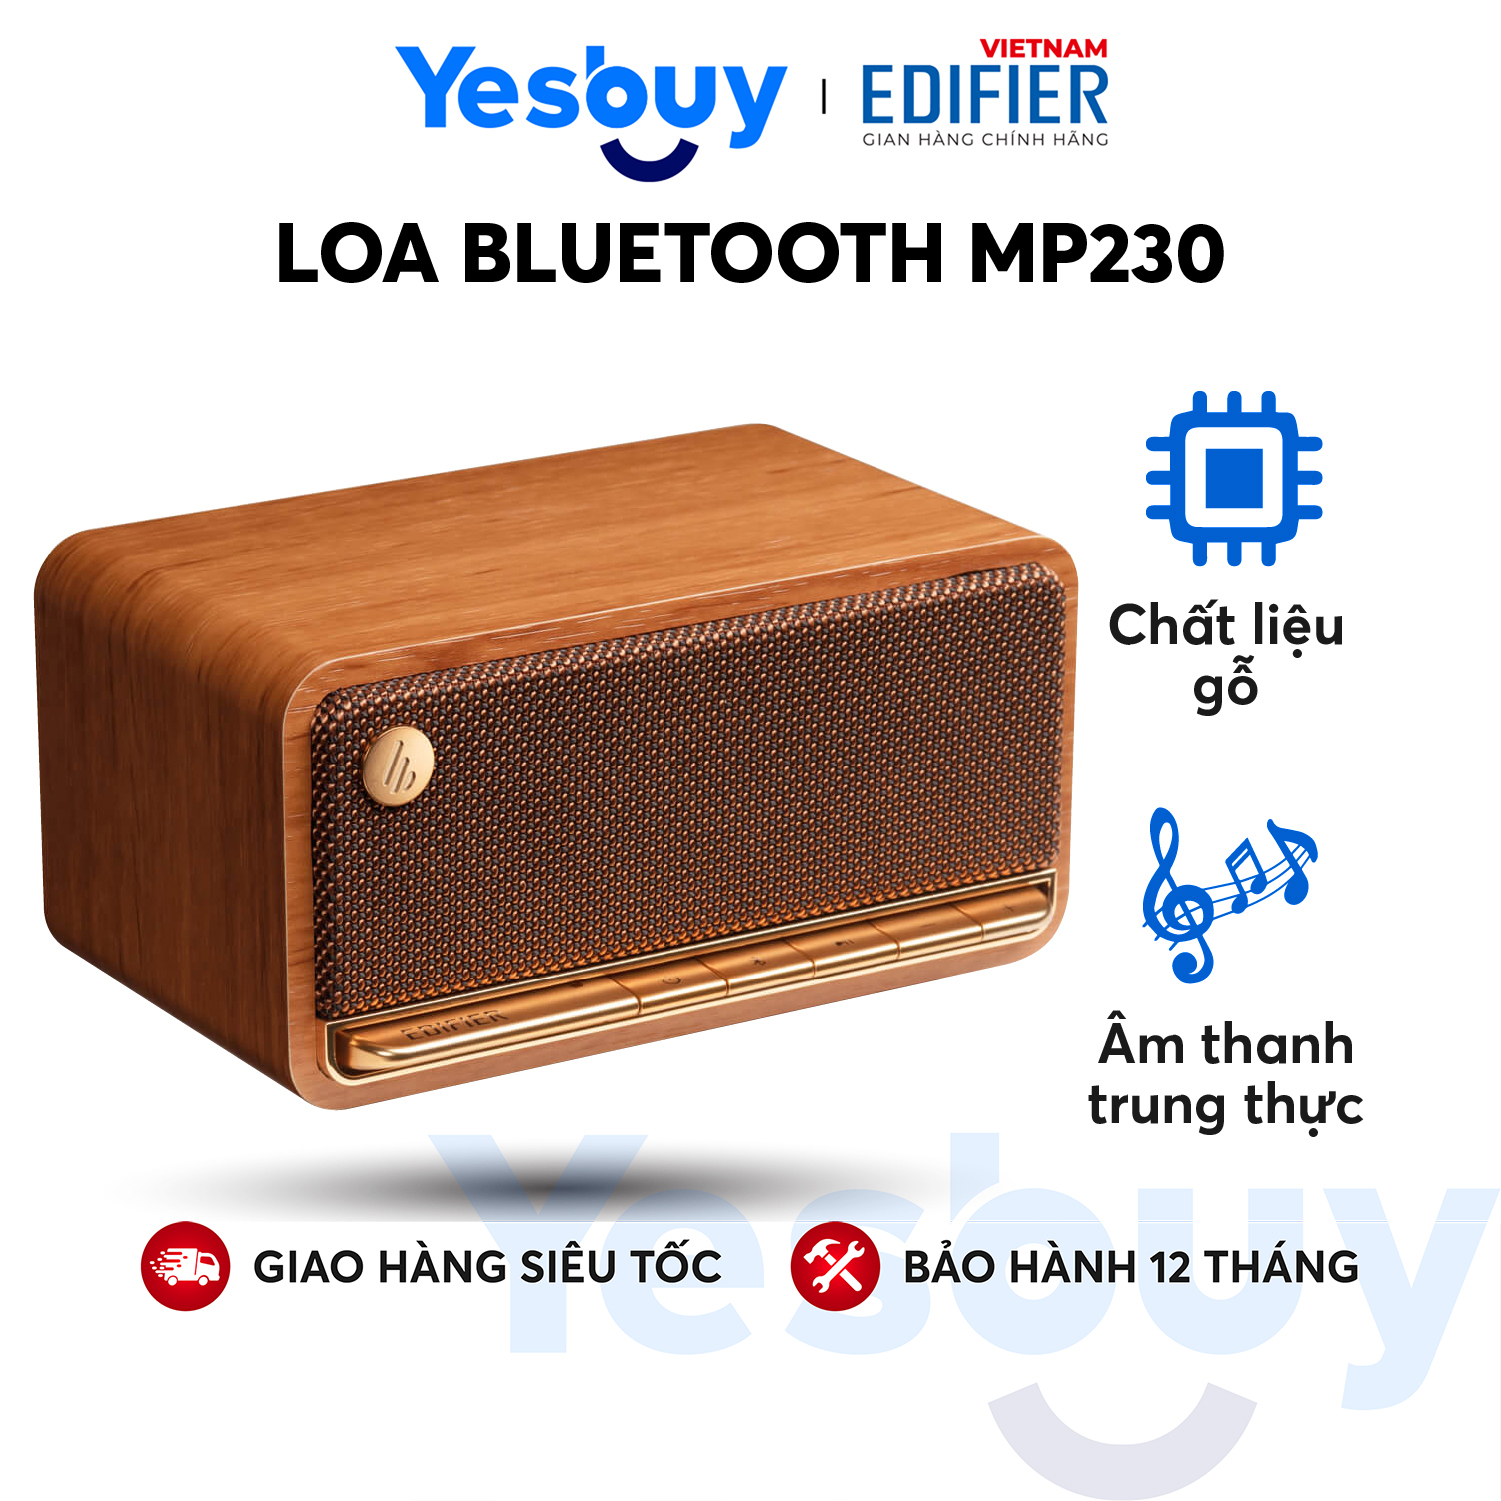 Loa Bluetooth 5.0 EDIFIER MP230 Thiết kế cổ điển Vỏ gỗ chống dội âm - Âm thanh strereo, Thời lượng pin 10h Playtime - Hàng Chính Hãng - Bảo Hành 12 Tháng